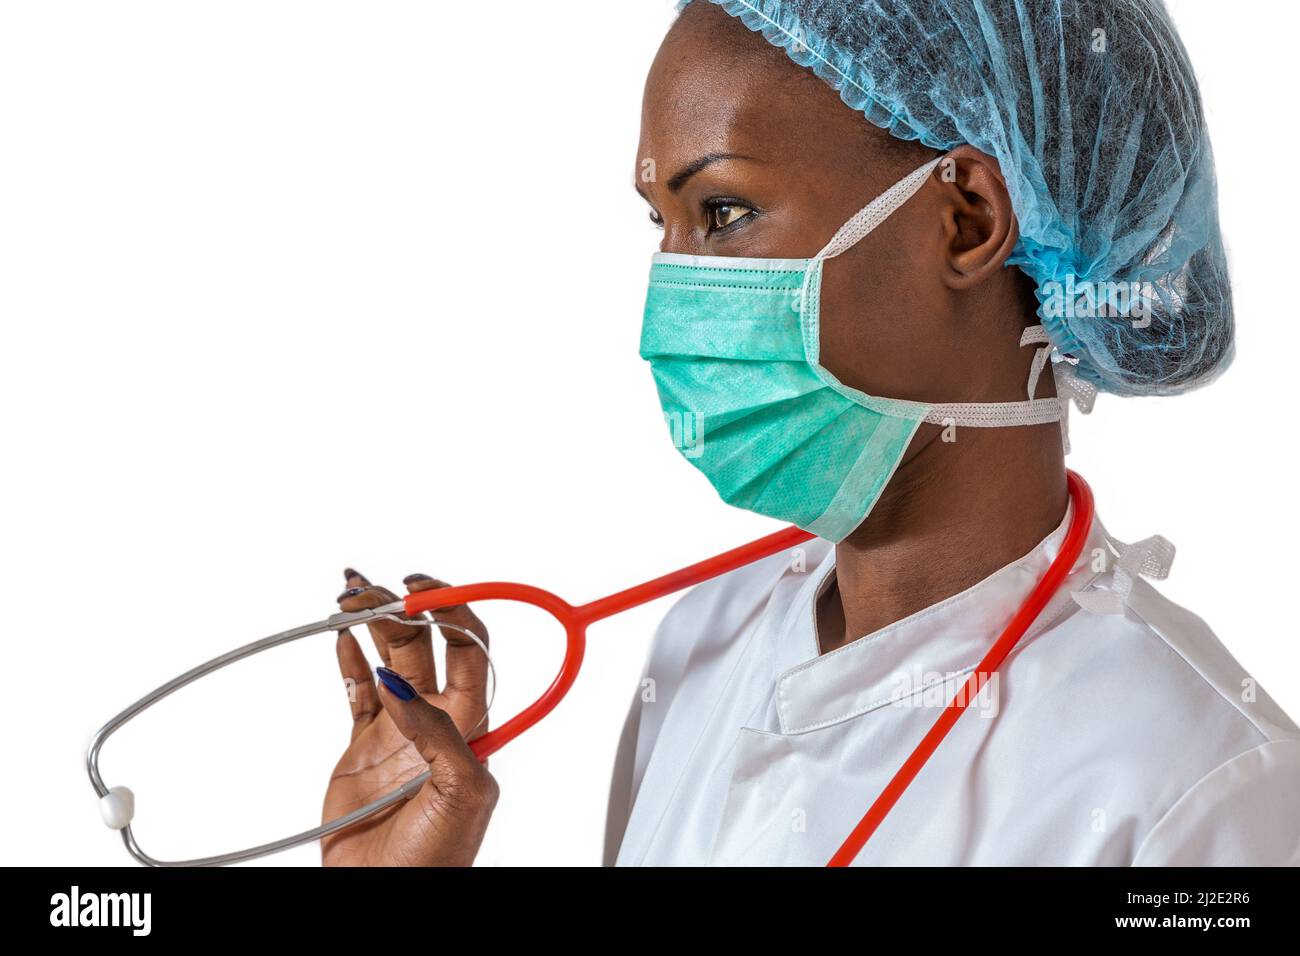 Weibliche amerikanische afrikanische Ärztin, Krankenschwester Frau trägt medizinischen Mantel, Kappe, mit Stethoskop und Maske. Stockfoto